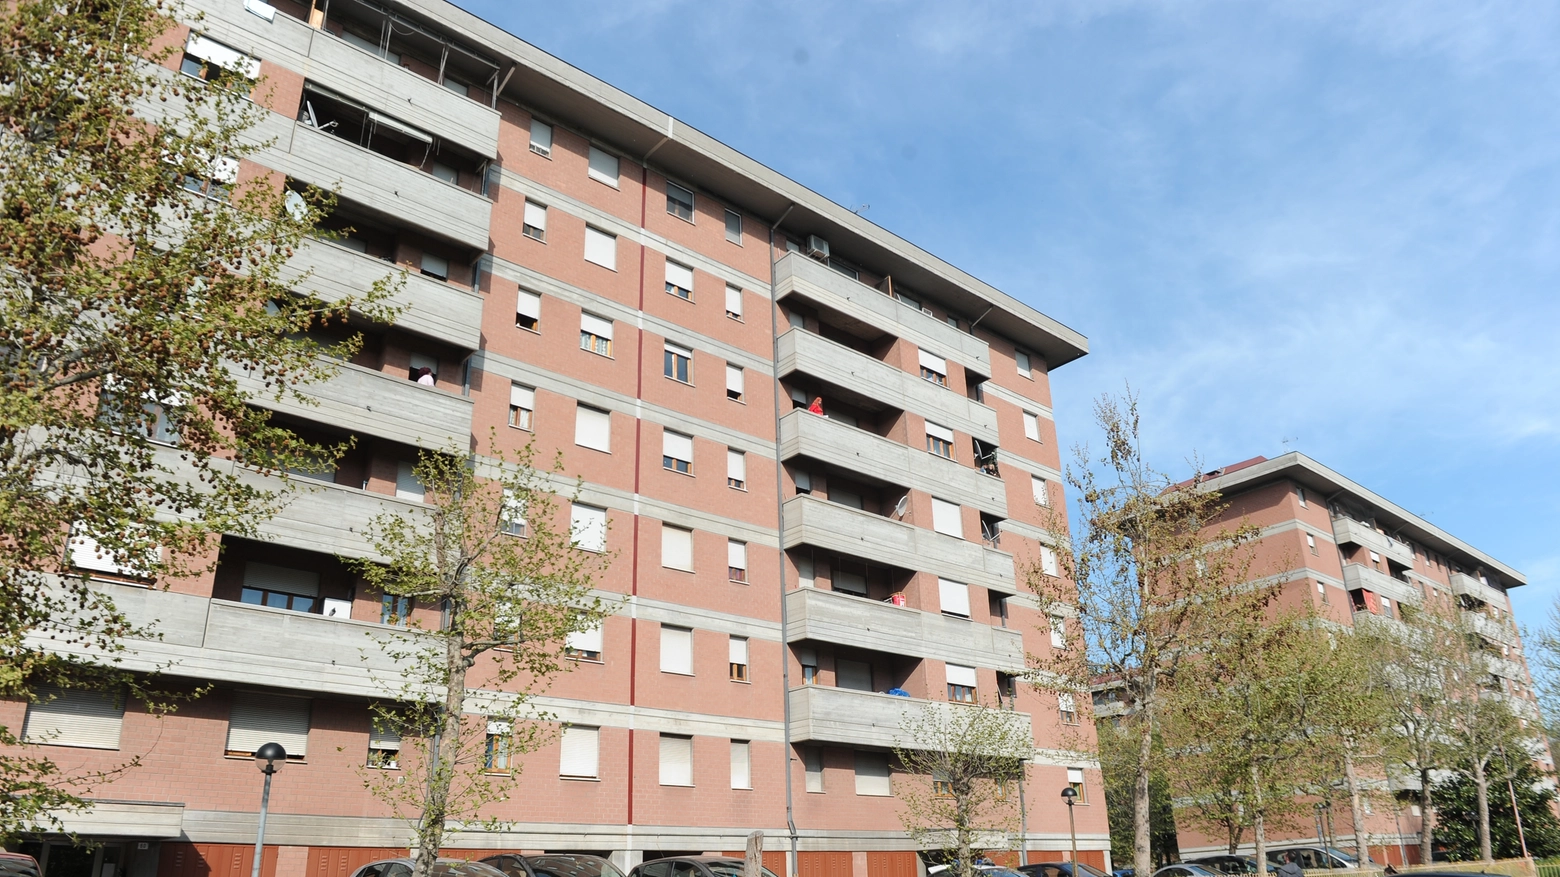 Bimba cade dal balcone in via Cerretti a Modena